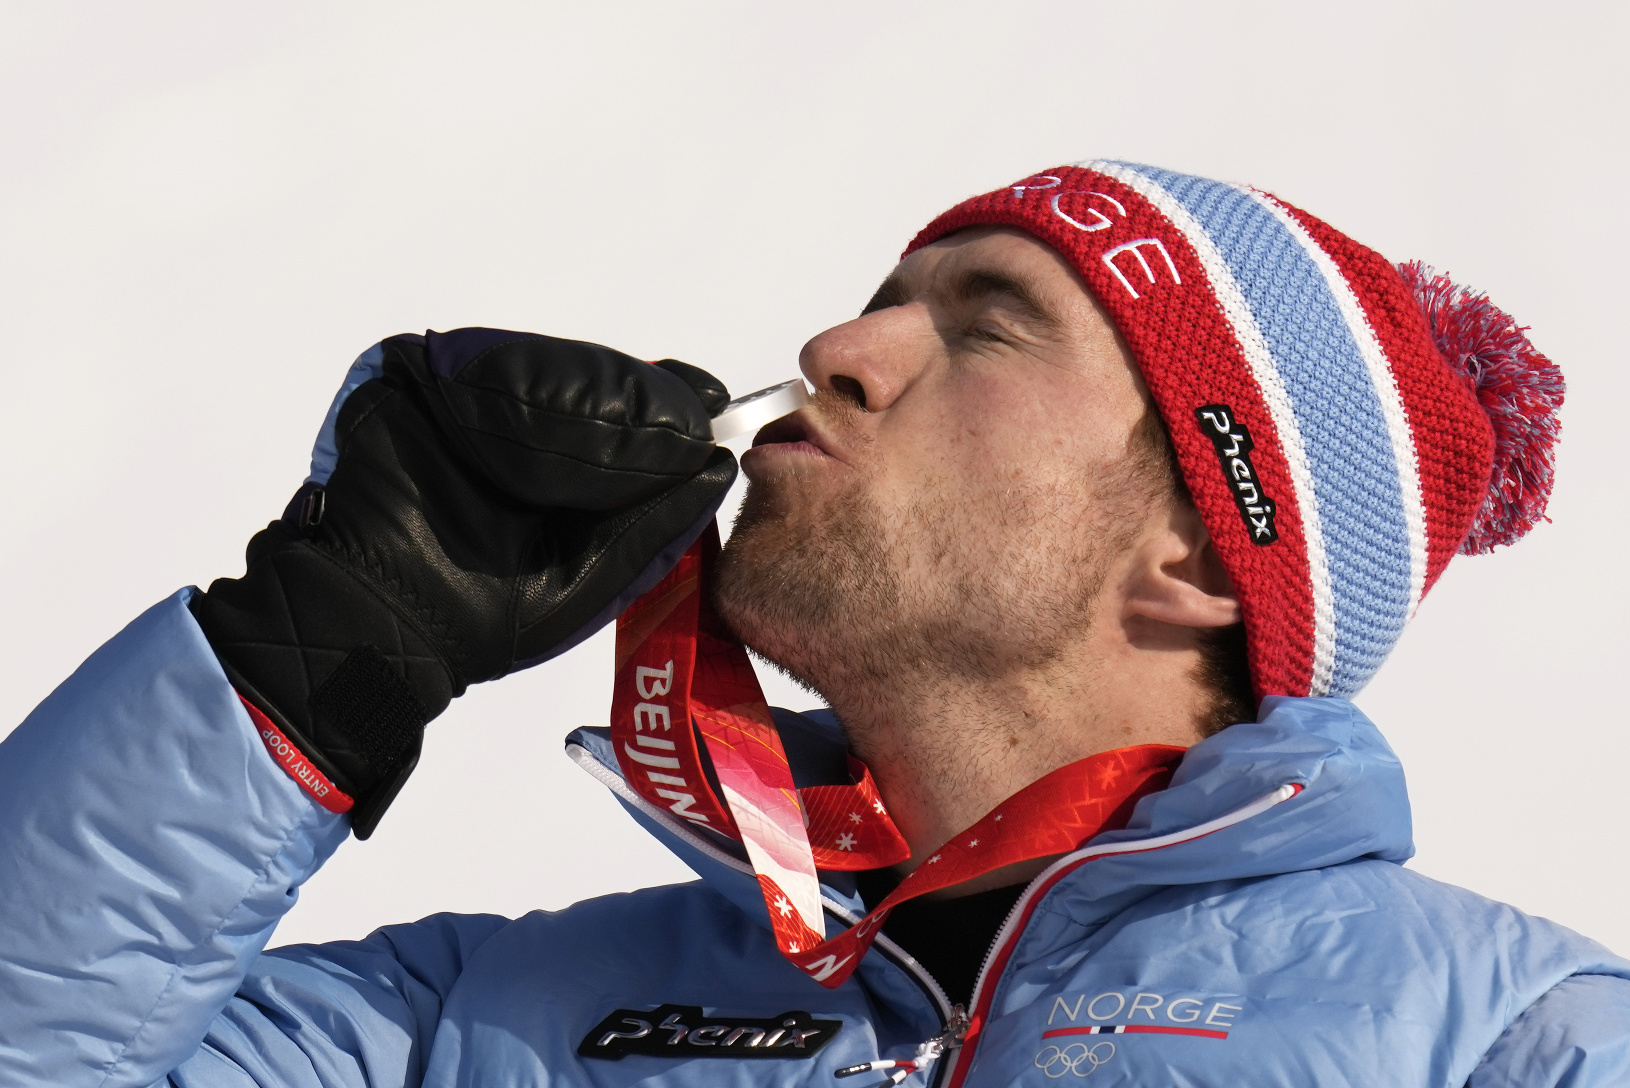 Nórsky lyžiar Aleksander Aamodt